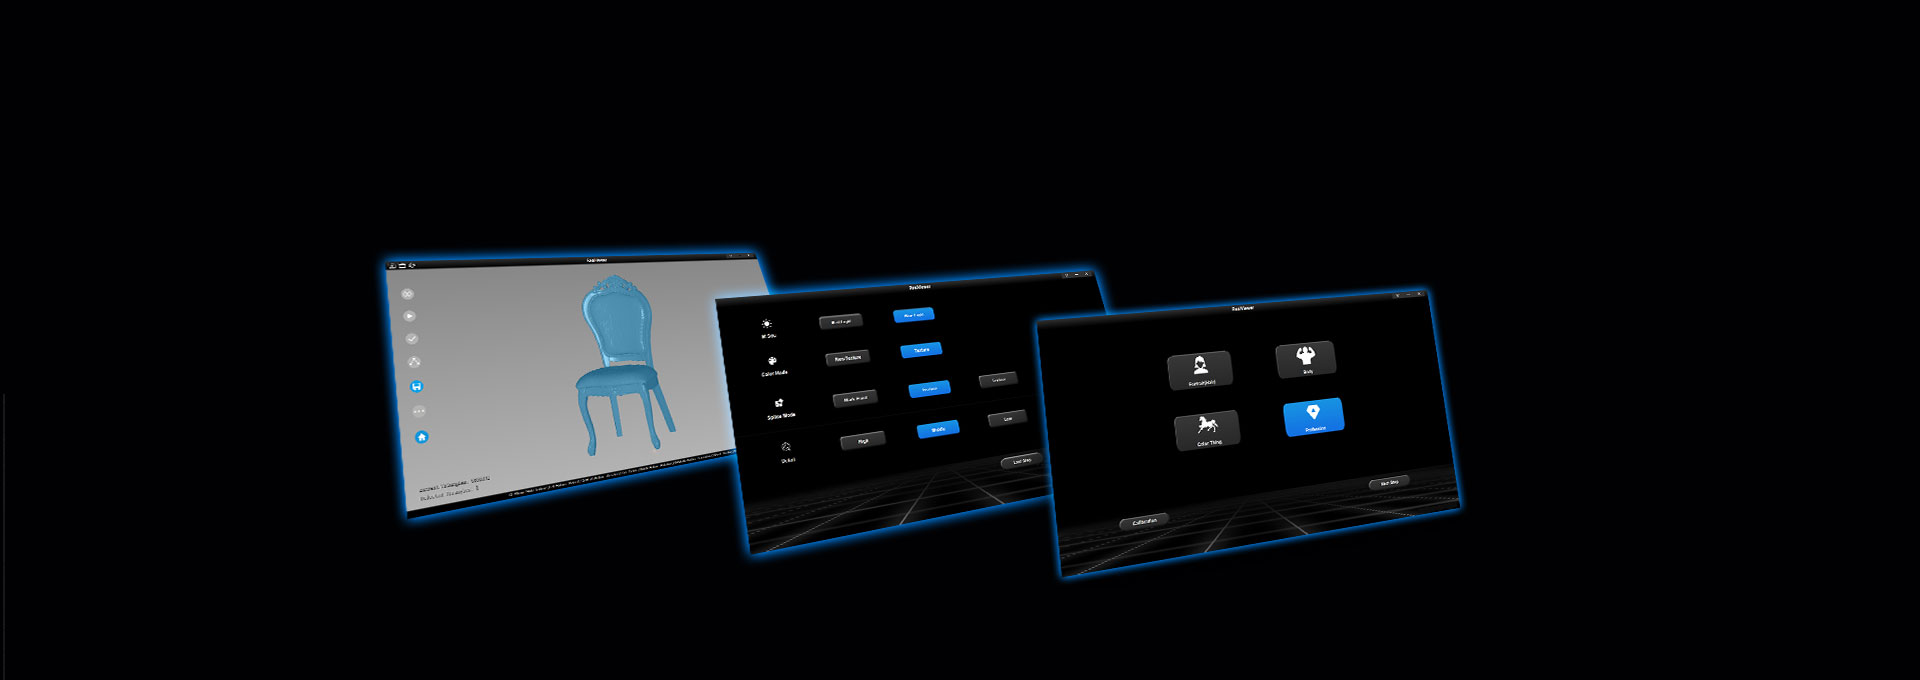 iReal 2S Handheld color 3D scanner(图1)